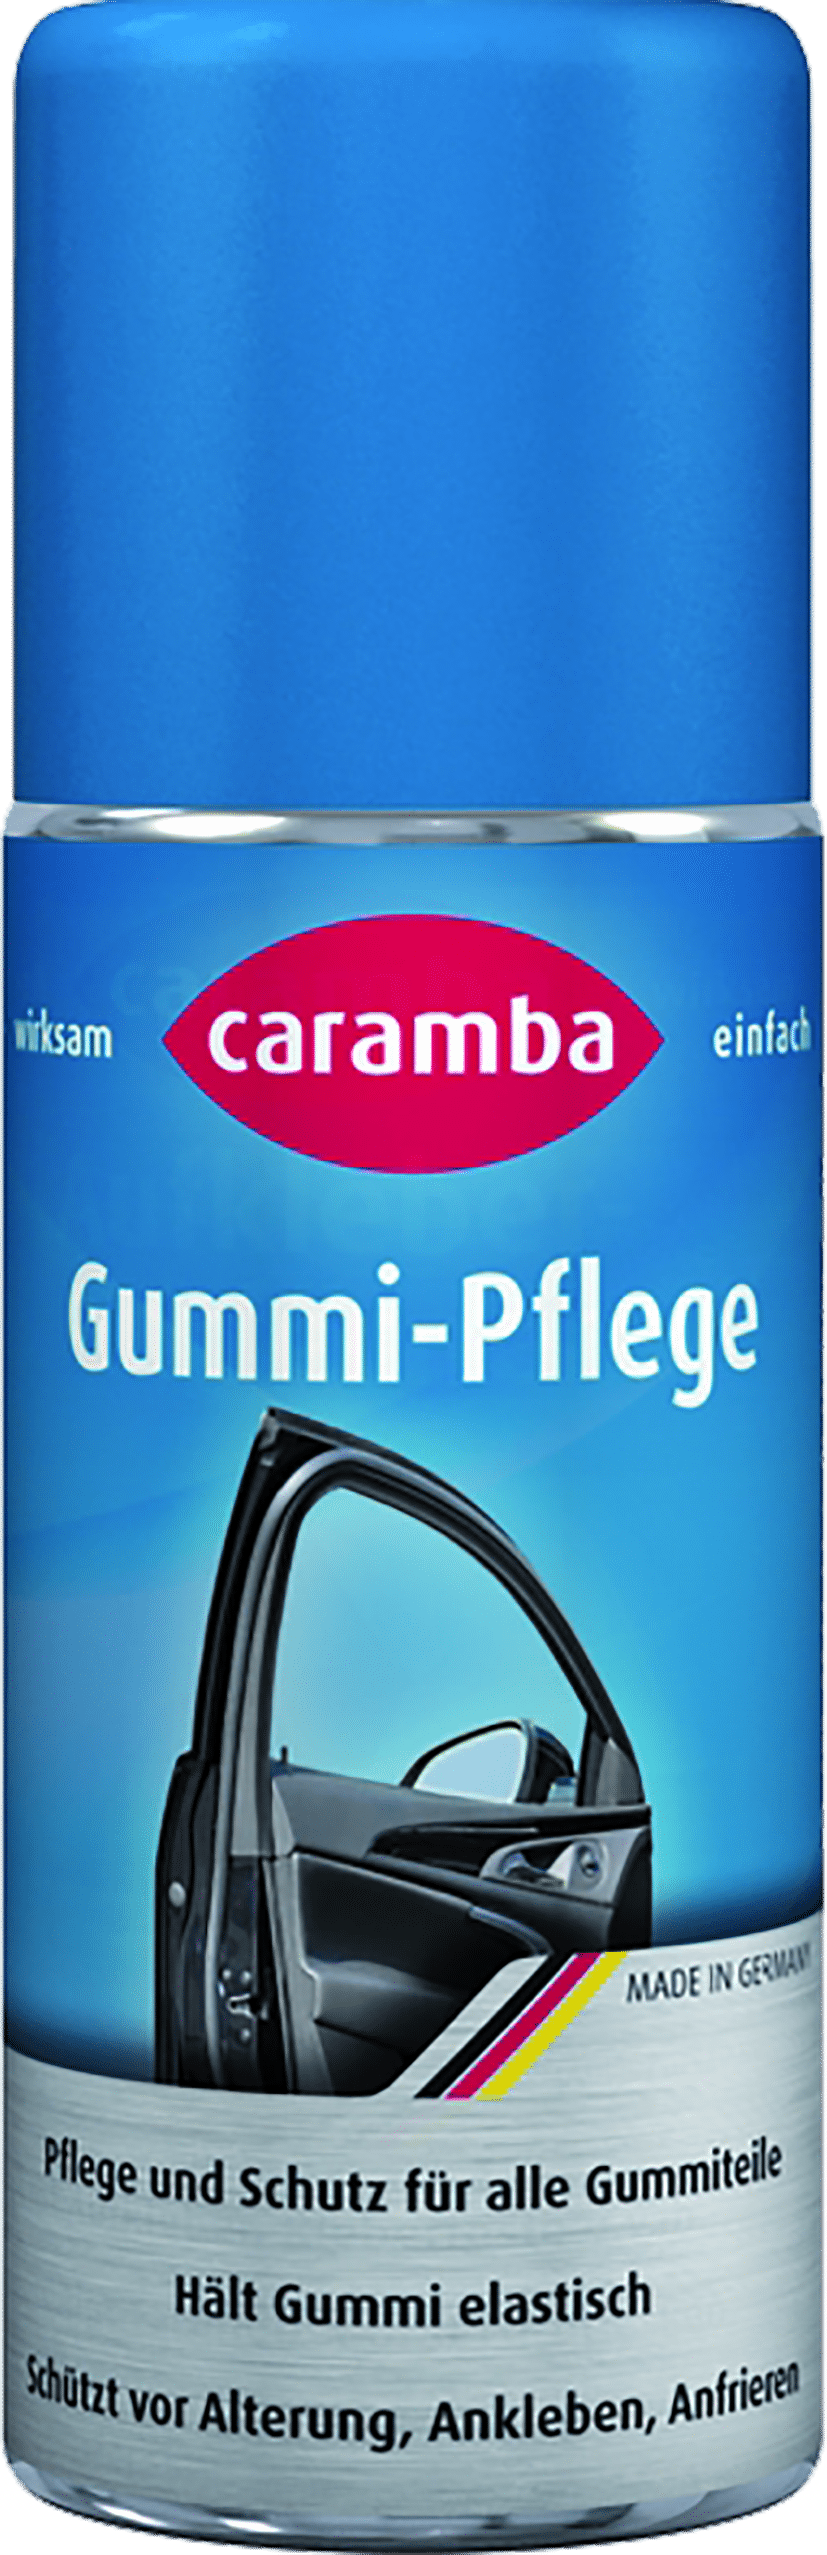 Caramba Gummi-Pflege-Stift 75ml bei SEEFELDER kaufen